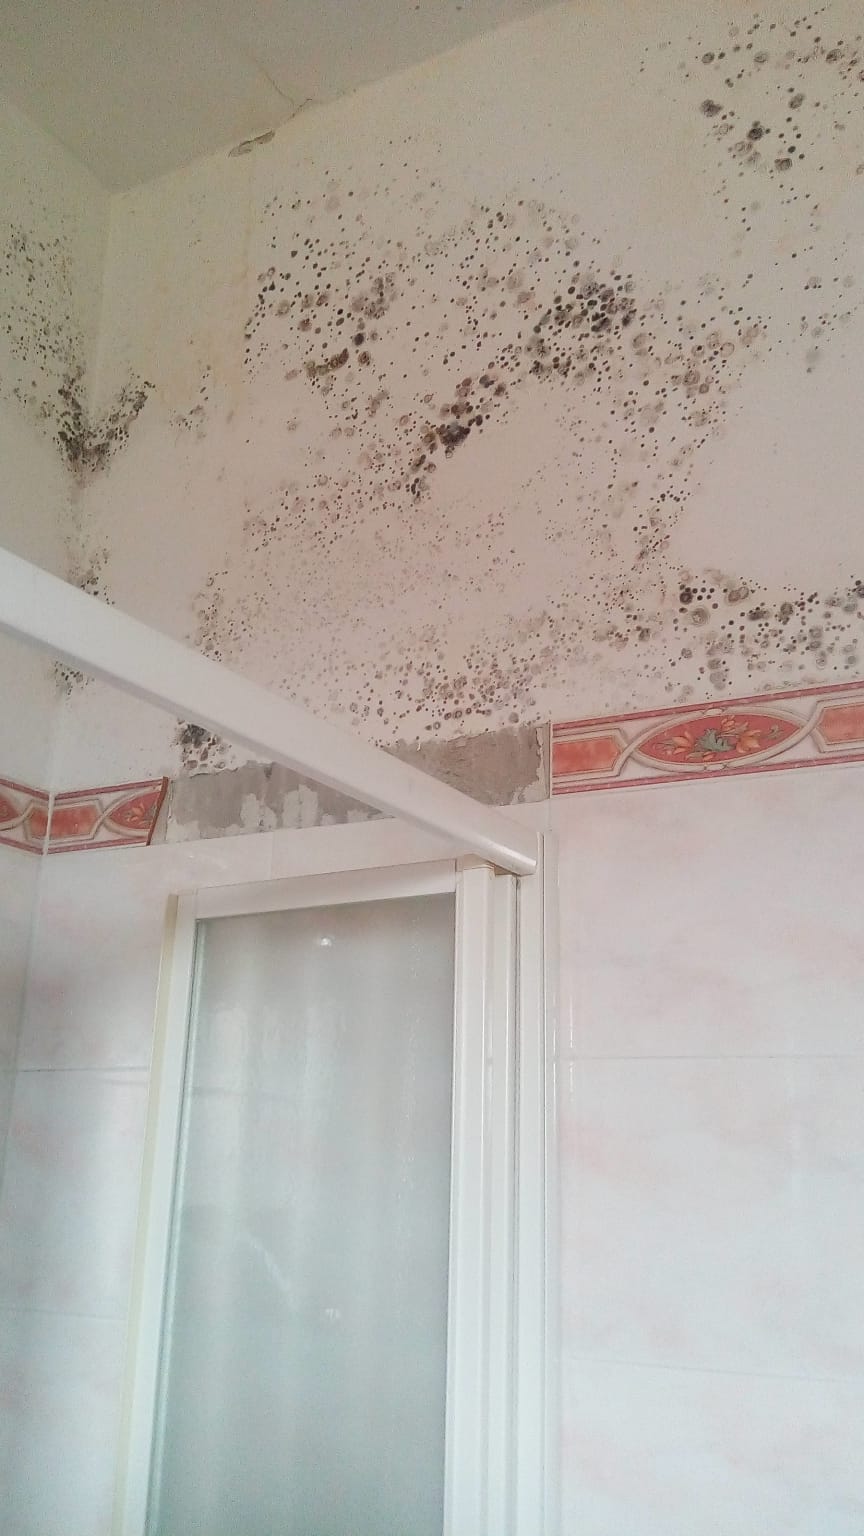 Cassano d'Adda la casa della famiglia sfollata danneggiata dal maltempo tromba d'aria del 29 ottobre